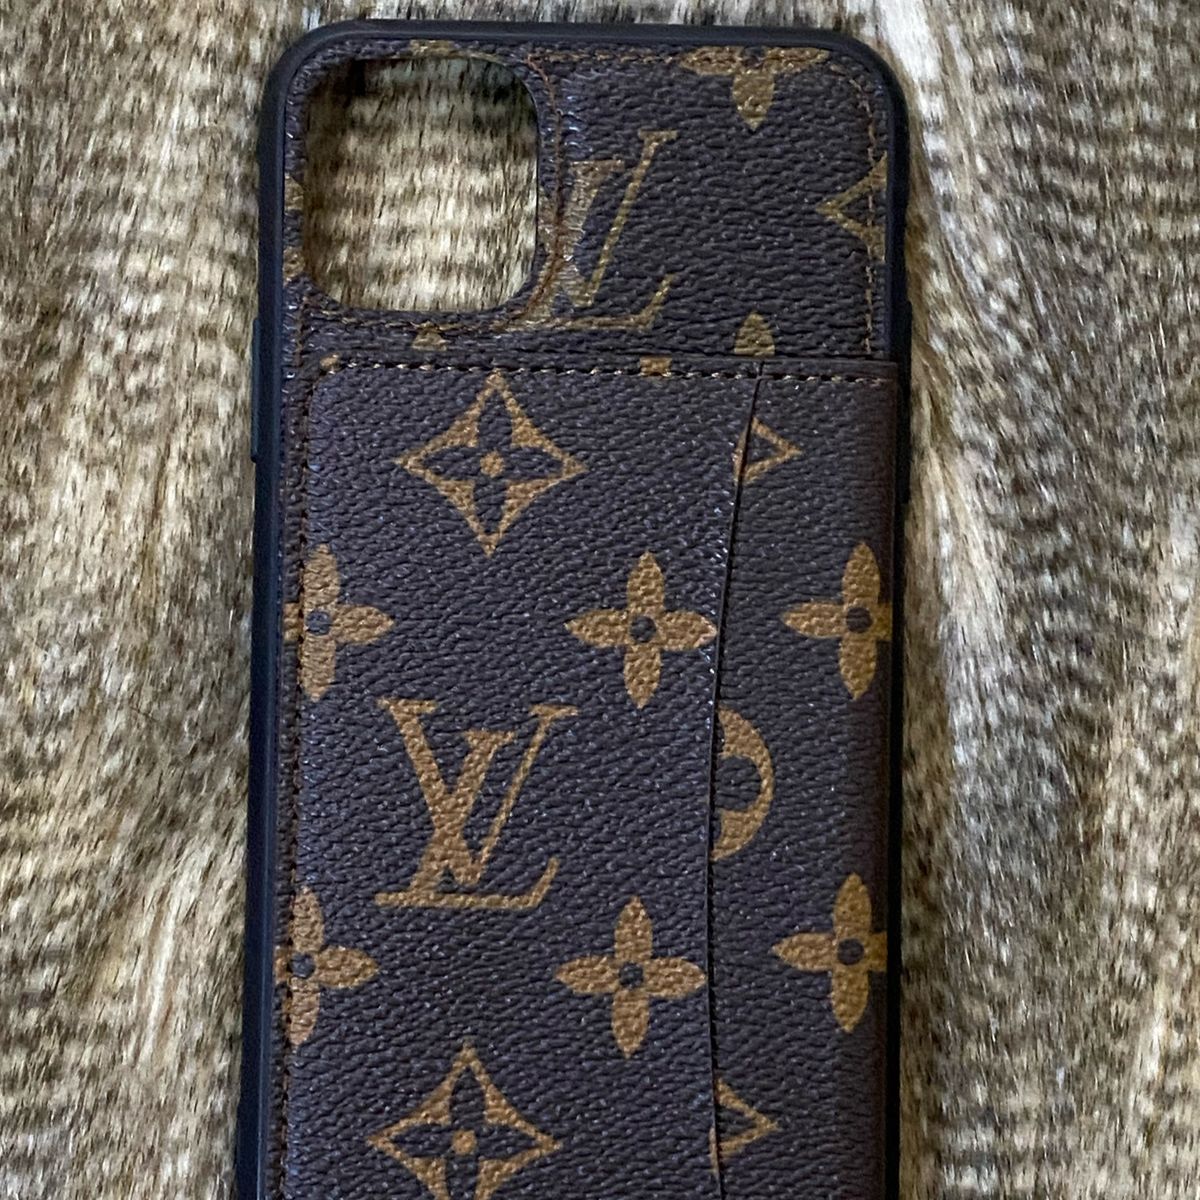 Case Capa Capinha Iphone 11 5.8 Louis Vuitton Monogram Porta